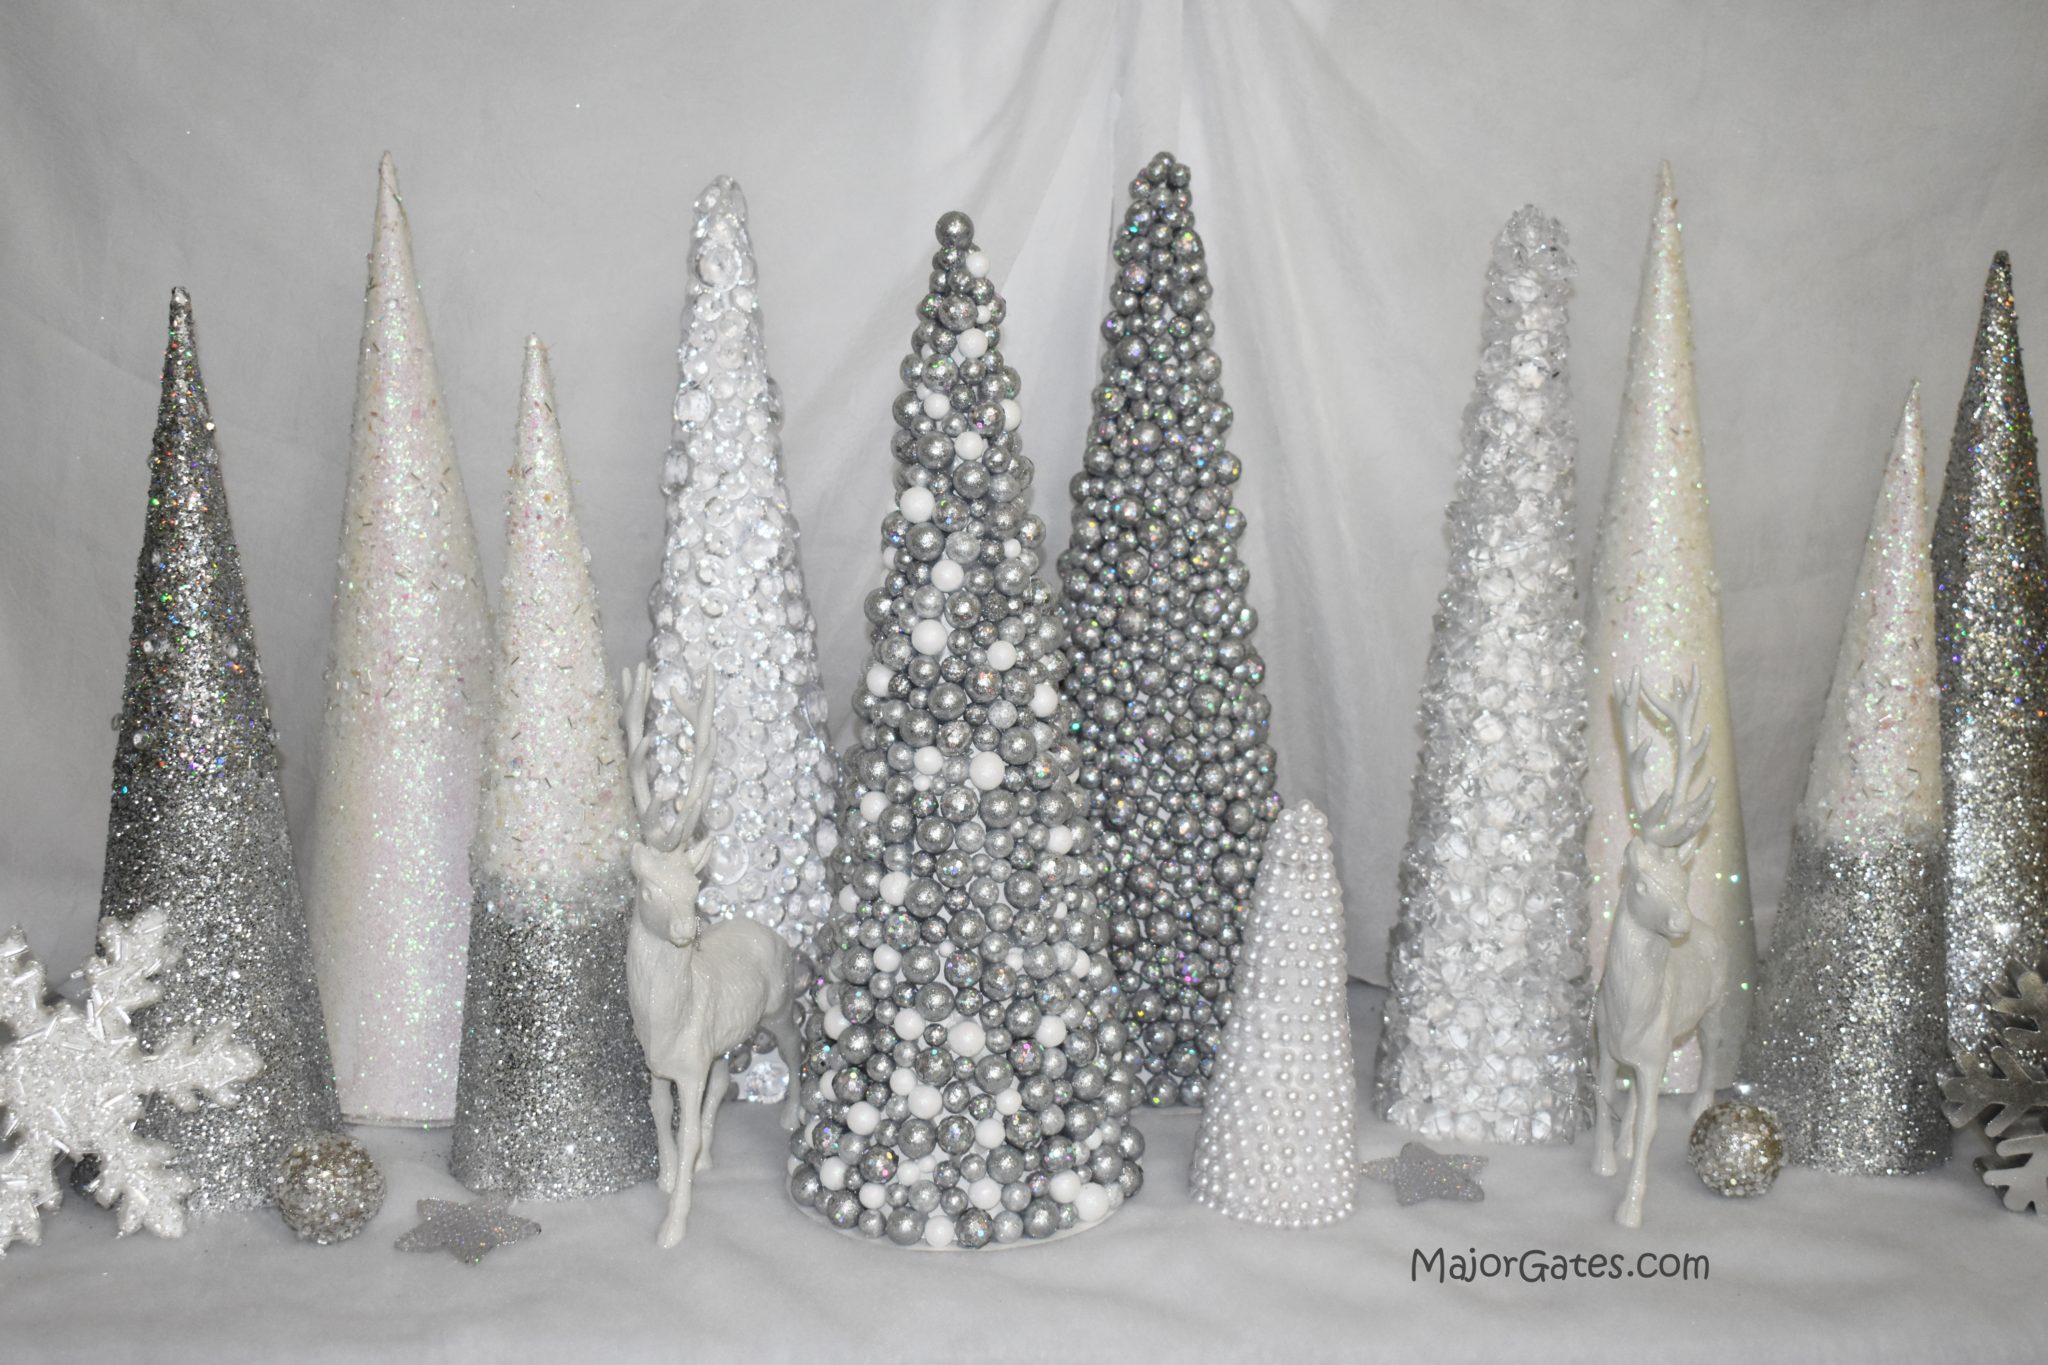 polystyrene balls foam Cones Bulk foam Tree Cones Cardboard Cones